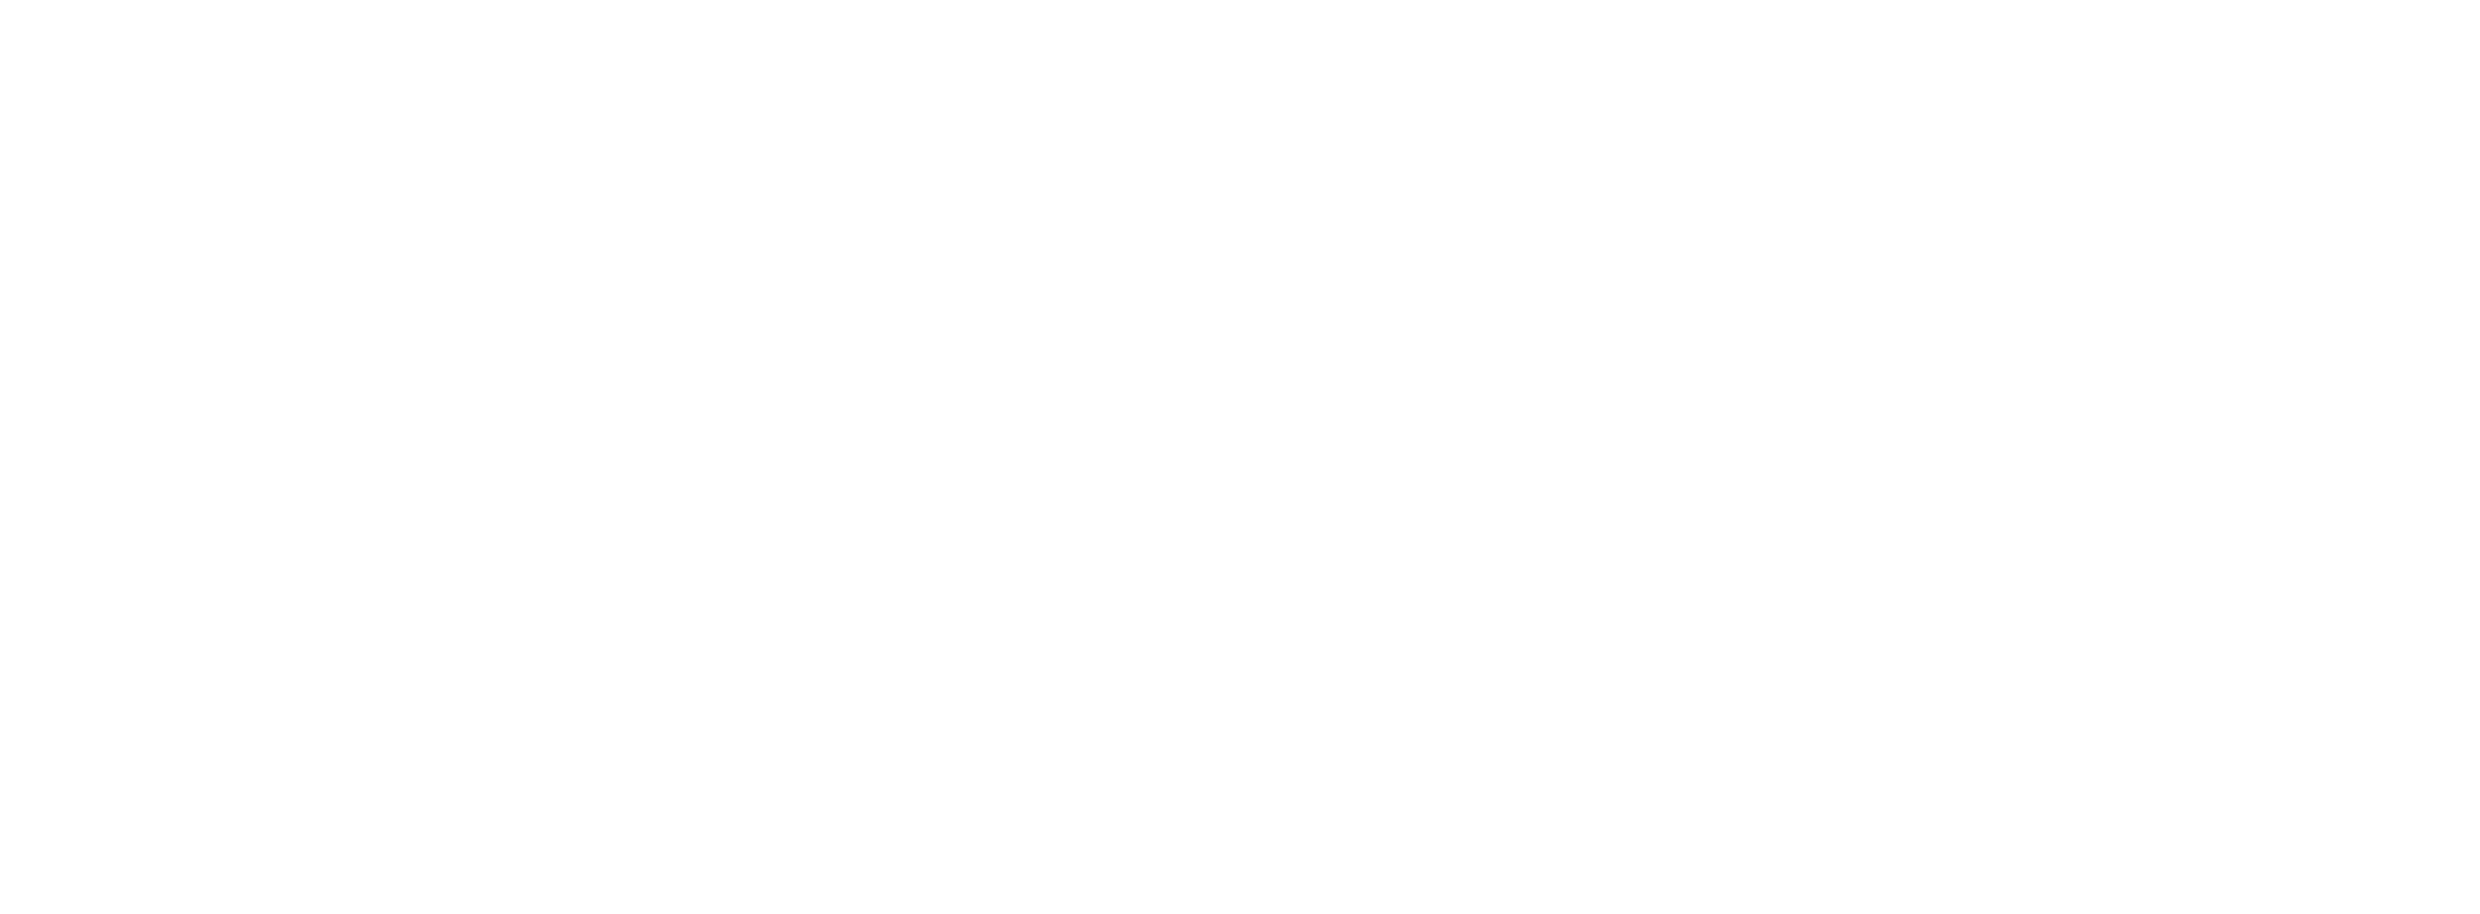 pblink-logo-white-2